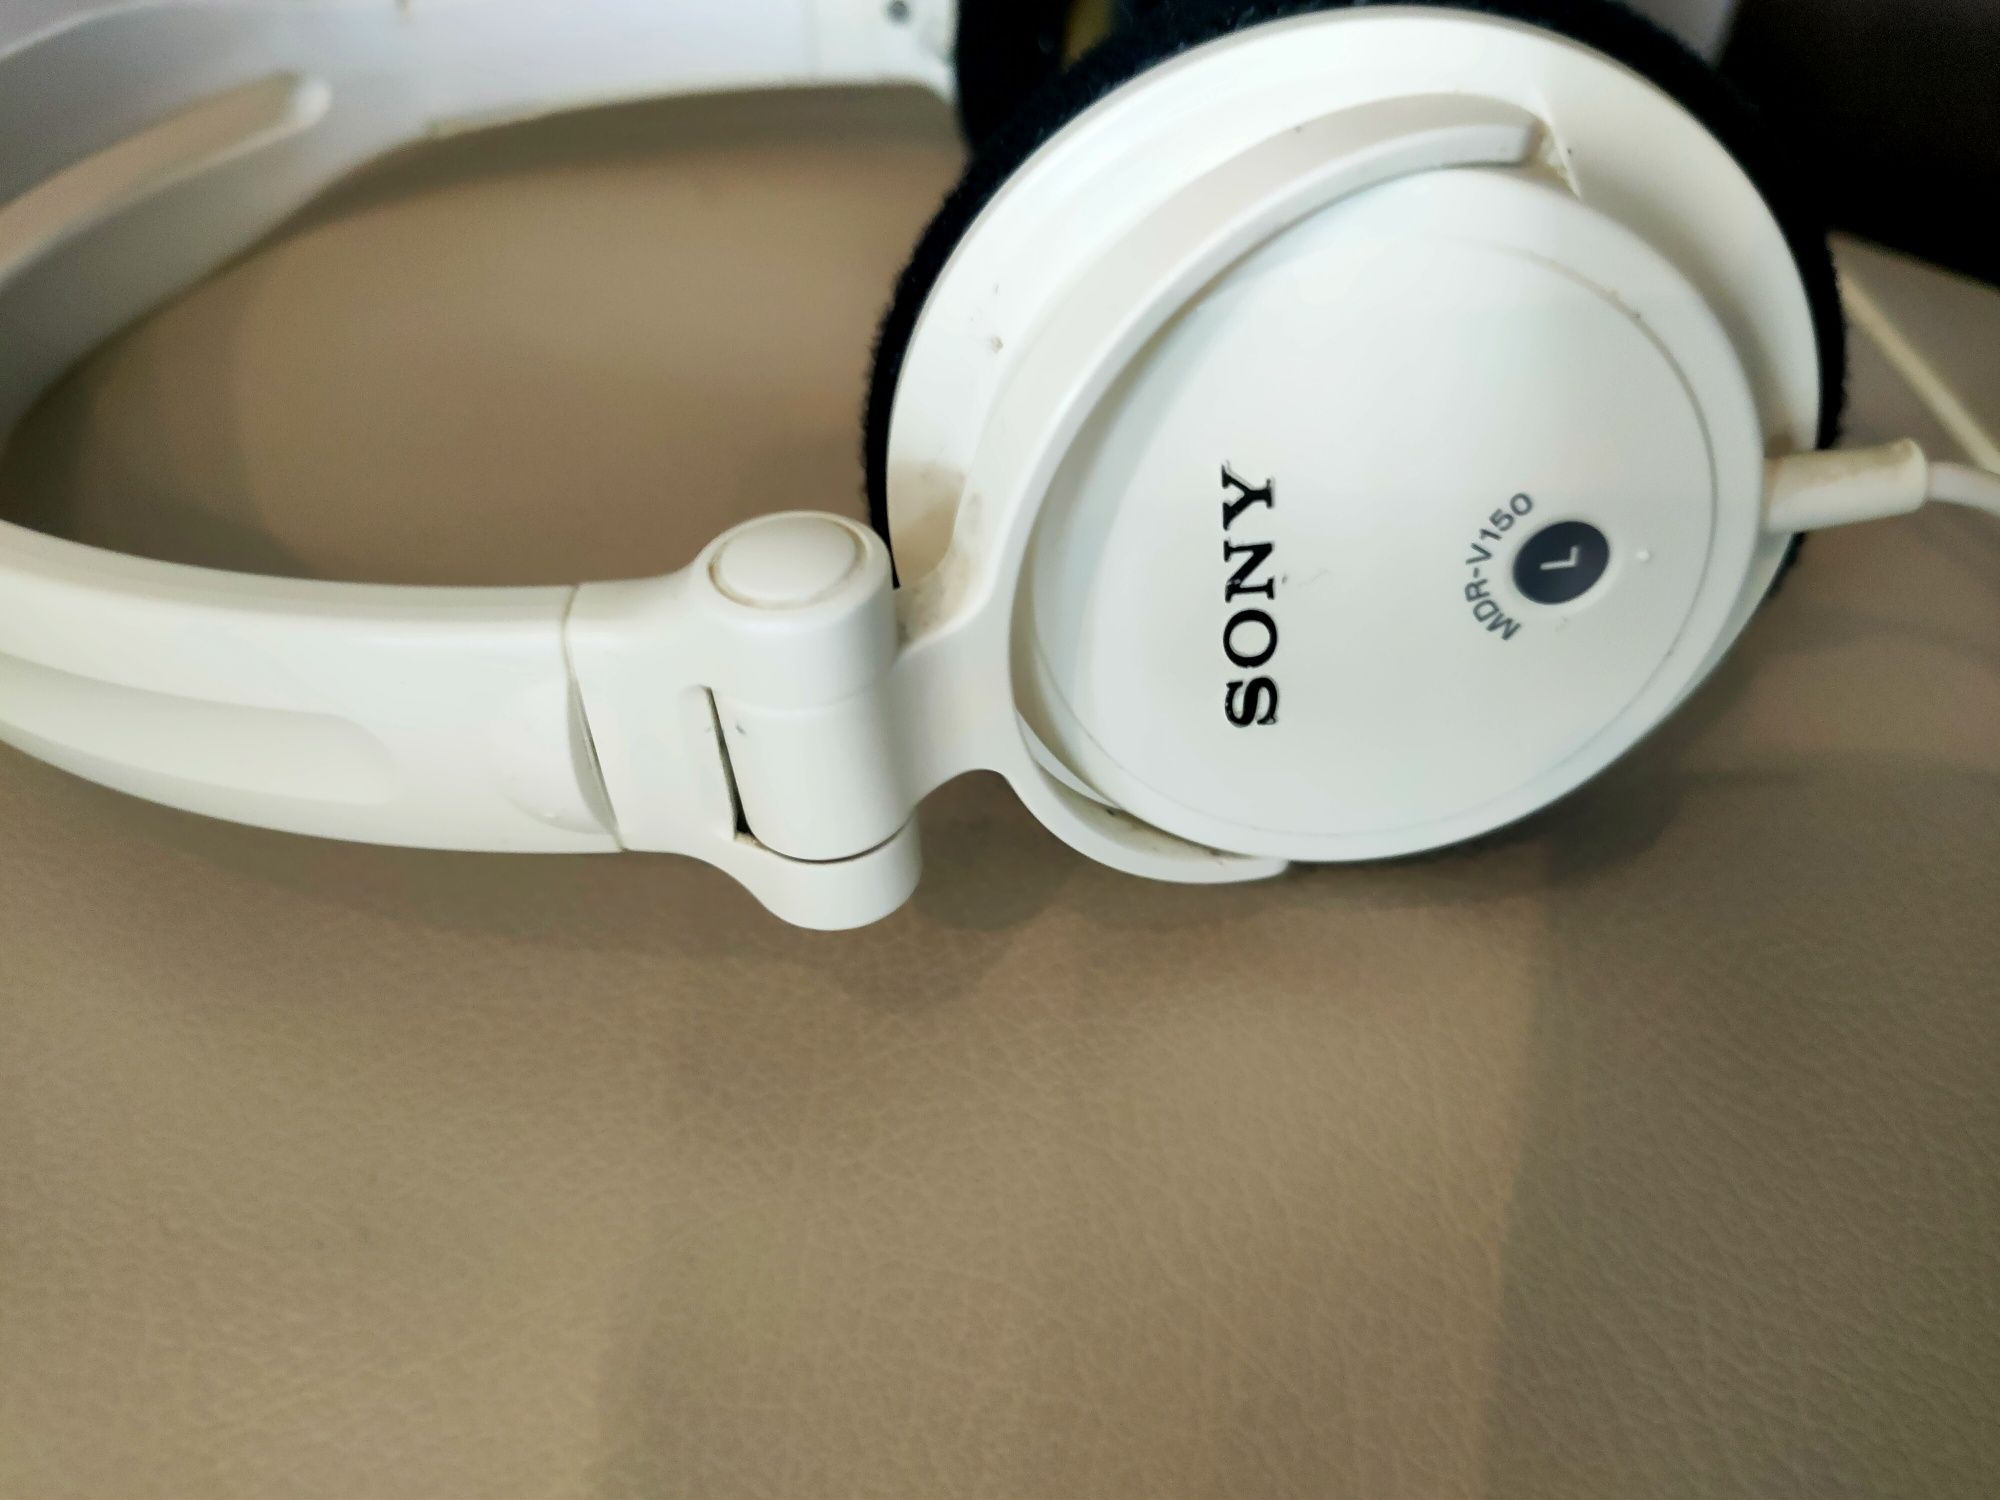 Słuchawki douszne Sony Mdr-v150 super stan